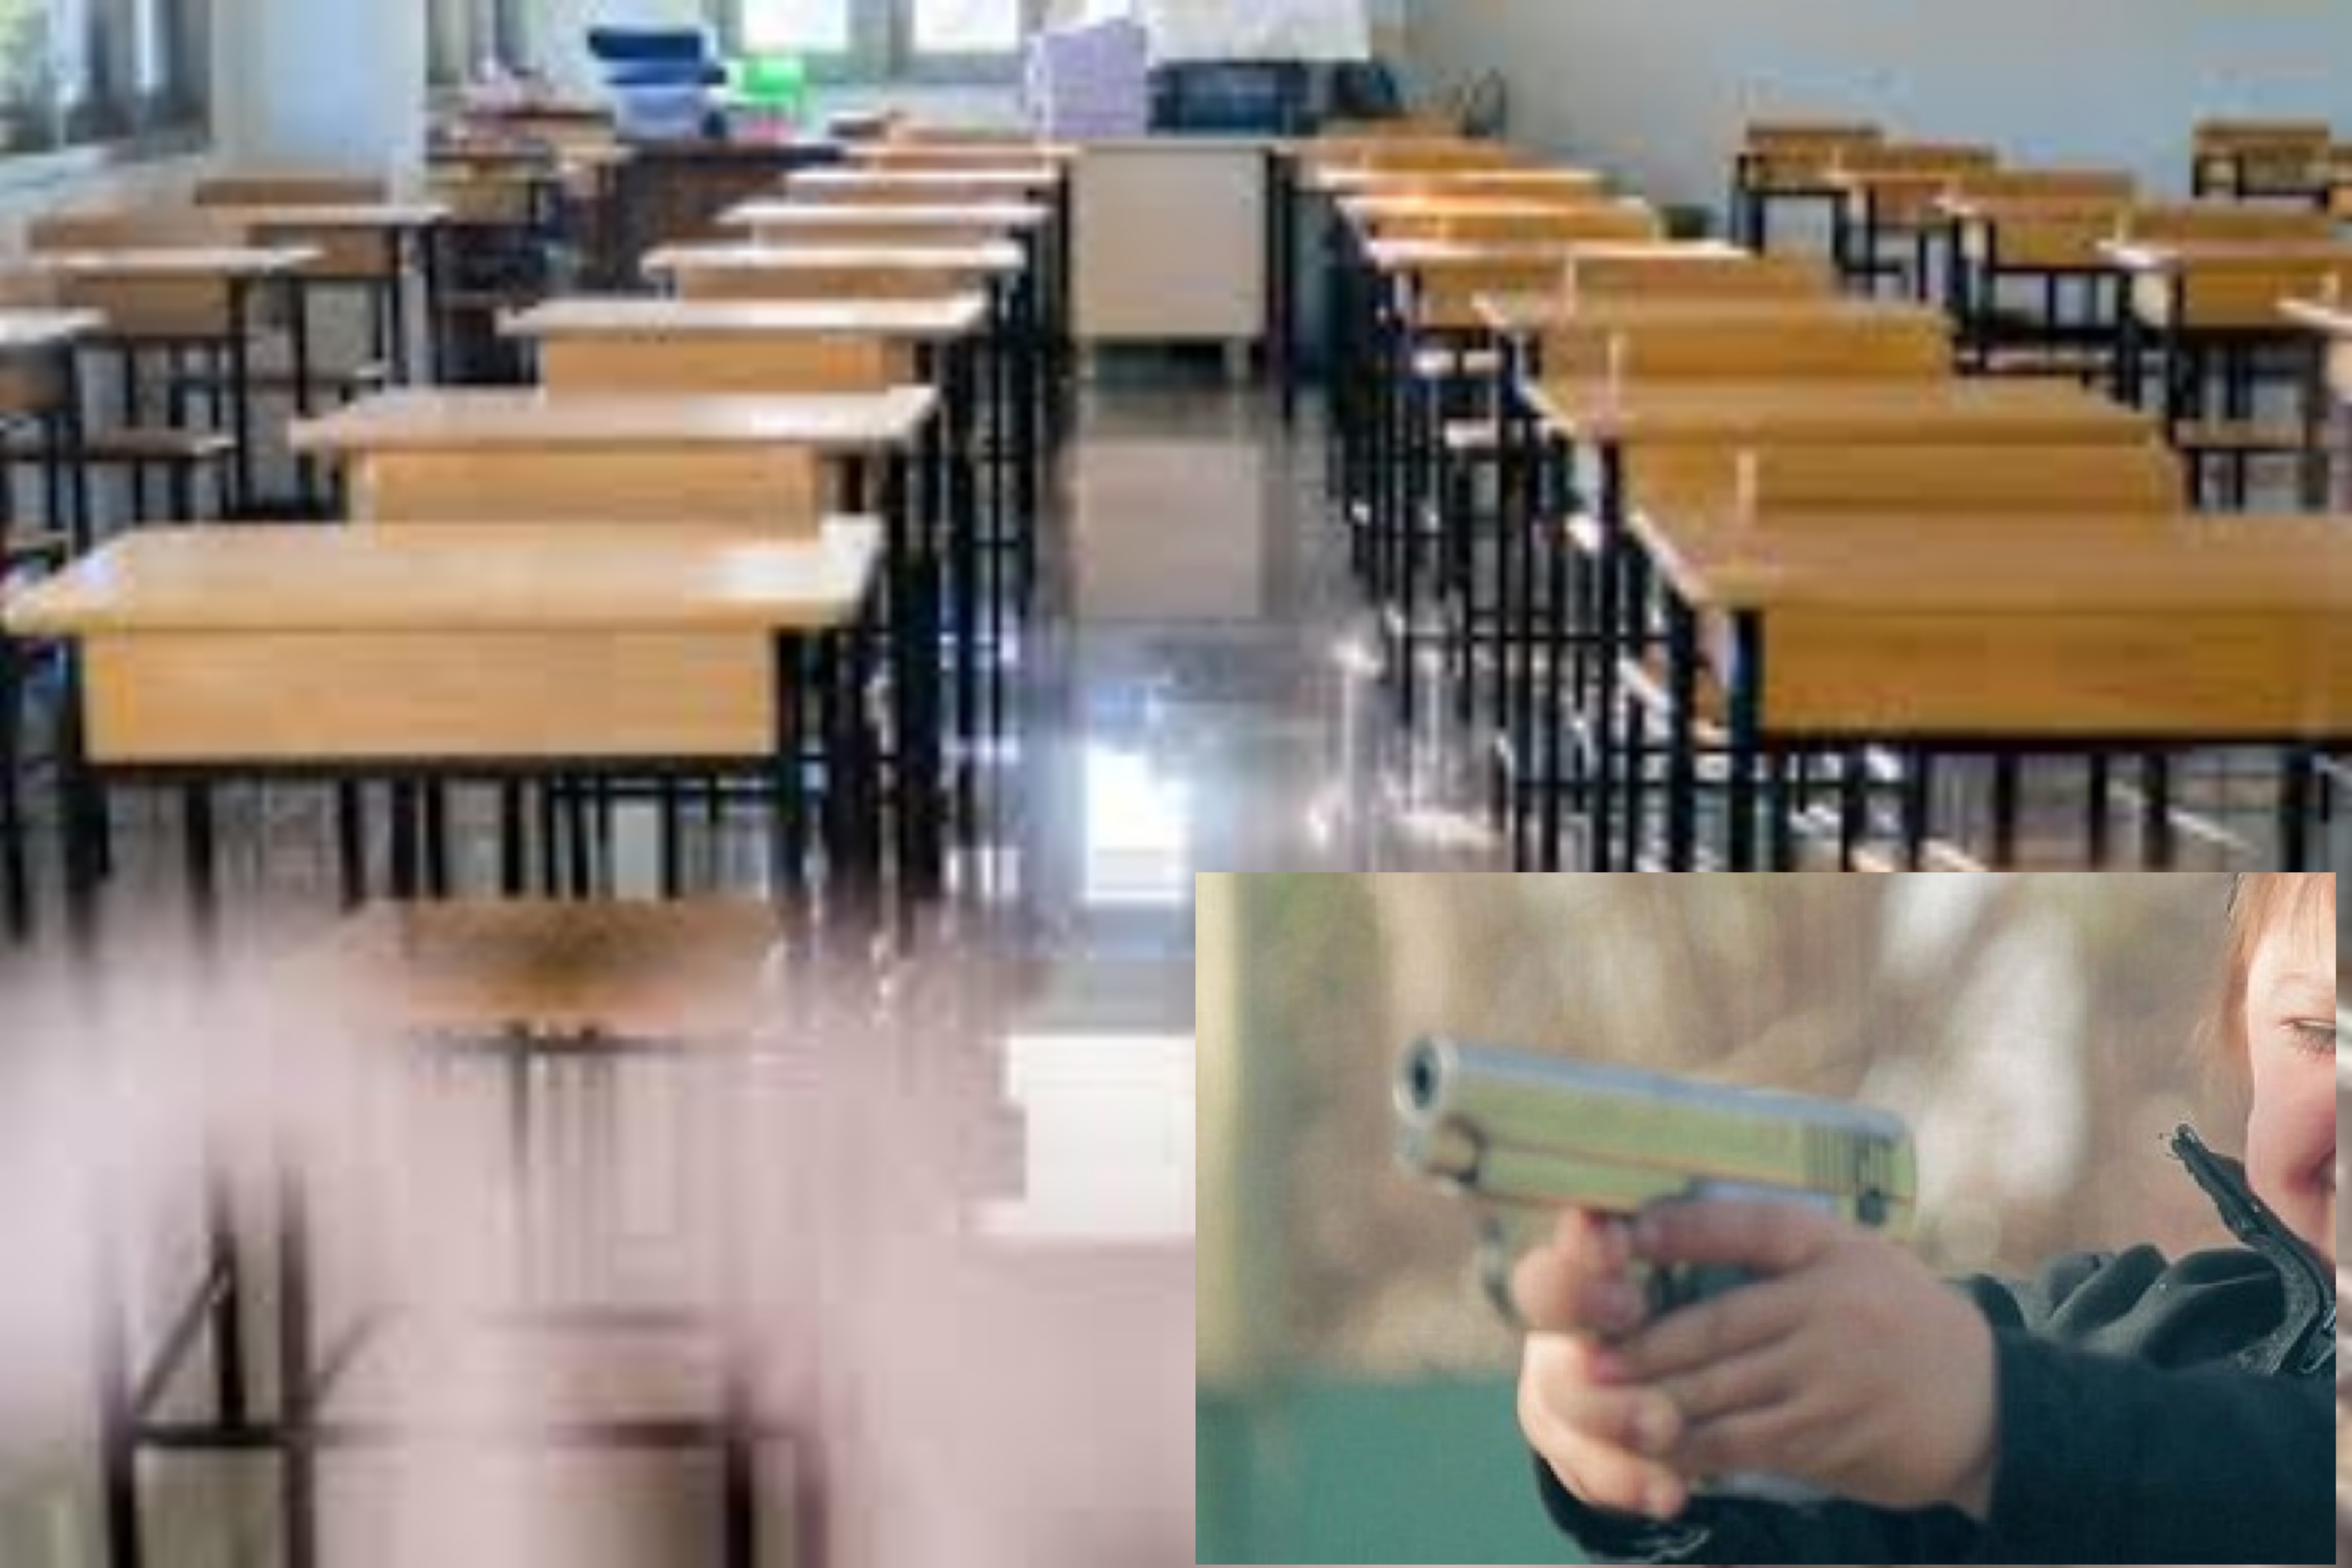 Shqetësuese: Nxënësi i klasës së katërt kapet me armë në shkollë